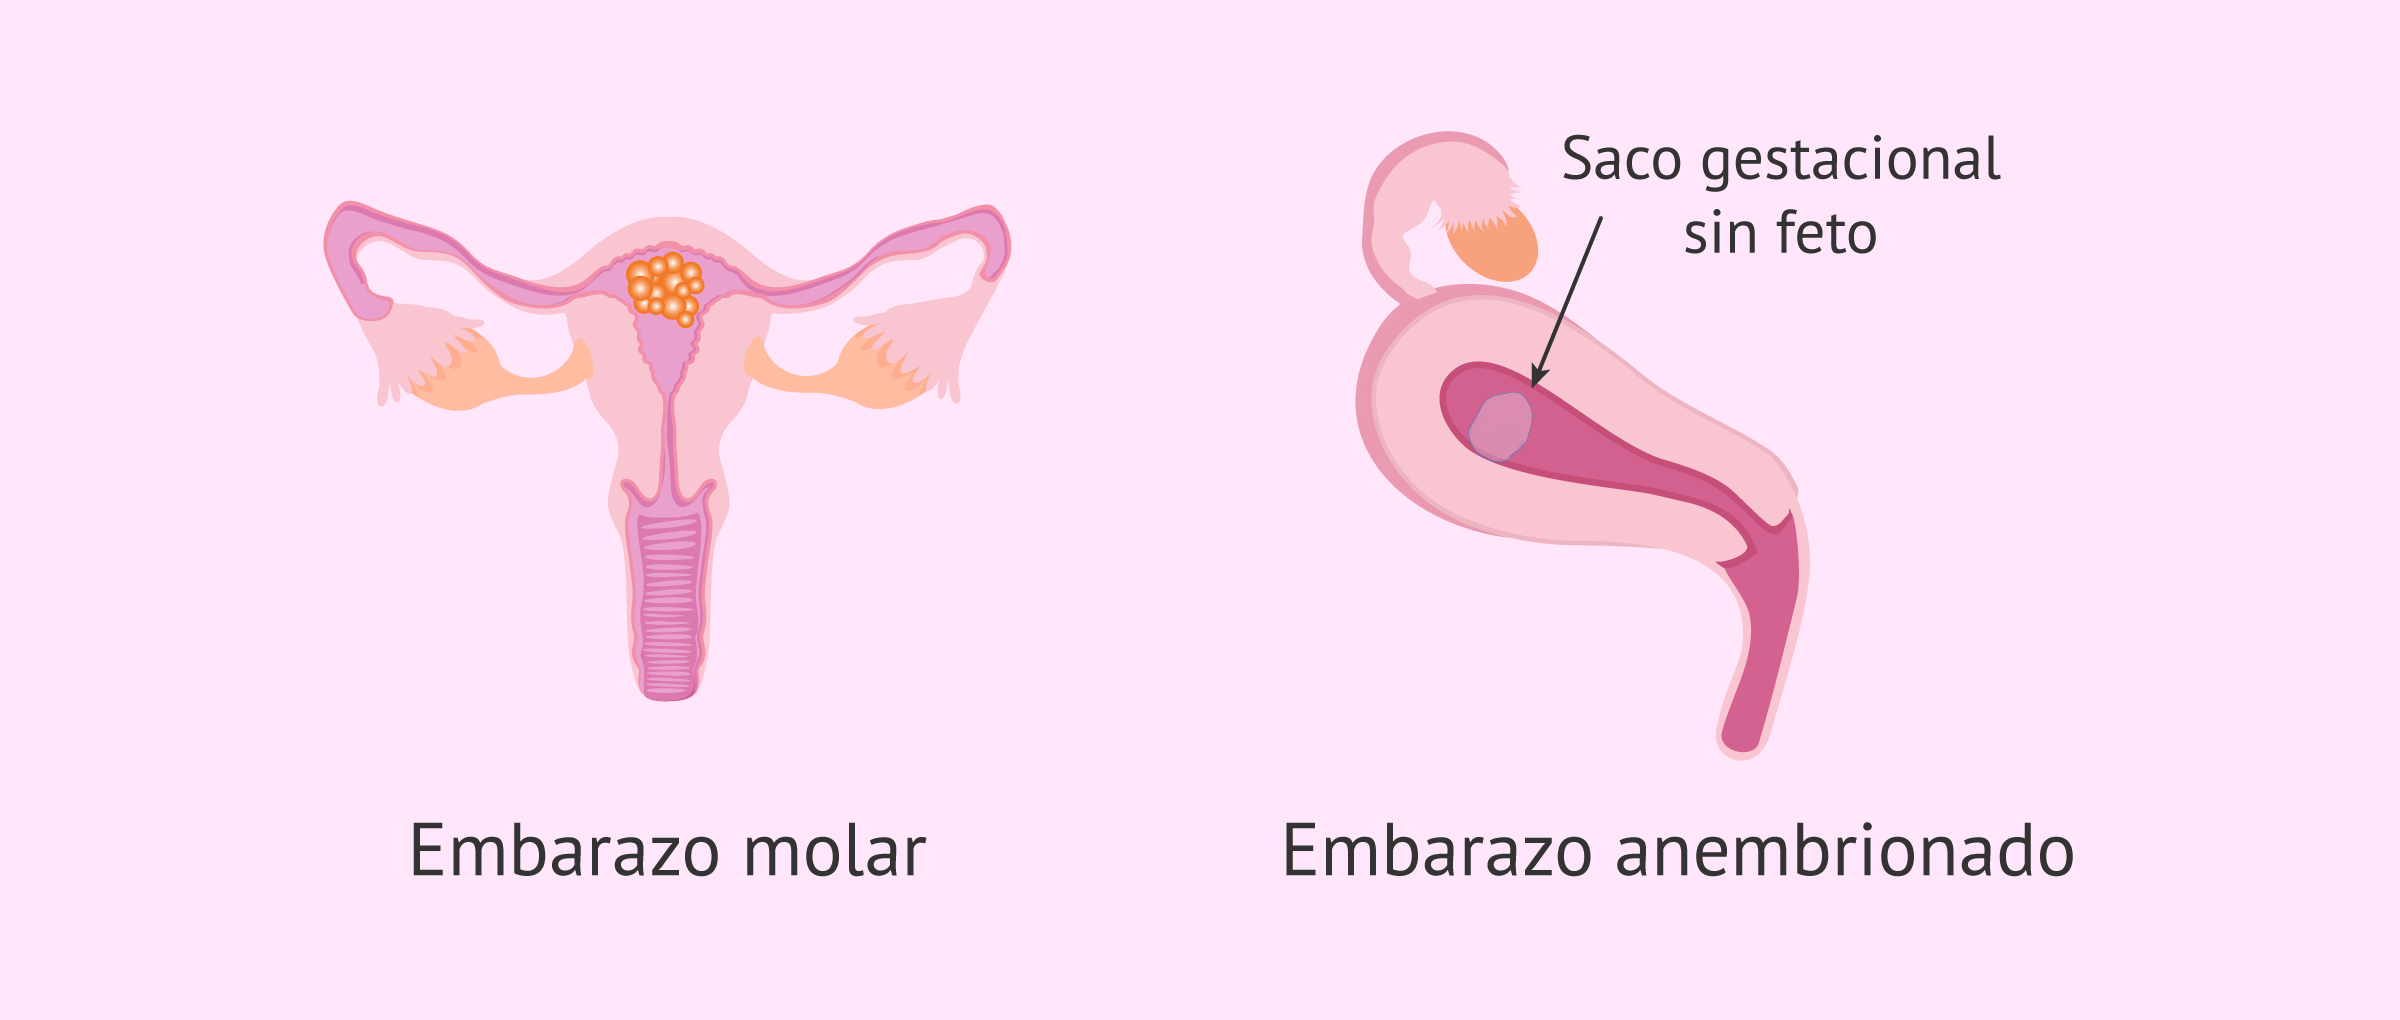 faq-embarazo-molar-anembrionado